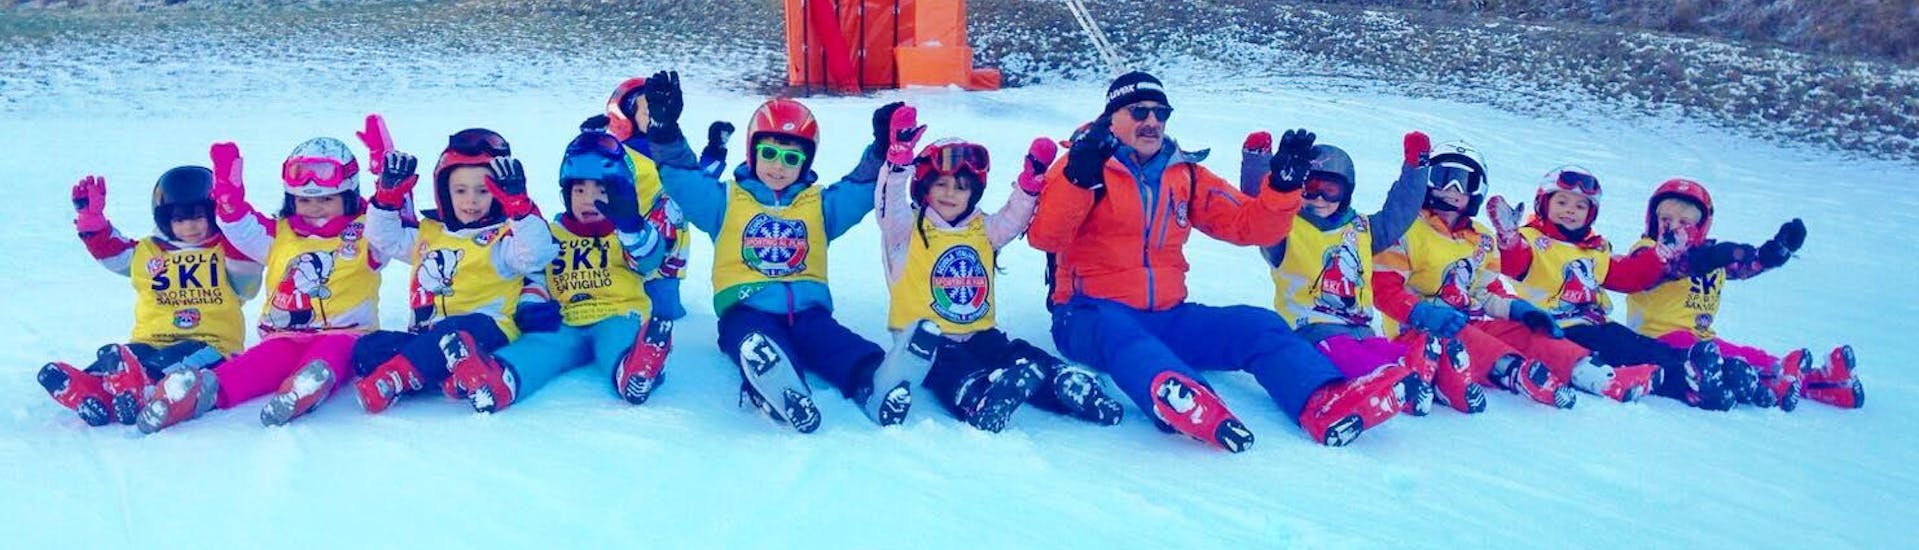 Lezioni di sci per bambini (3-14 anni) - Natale.